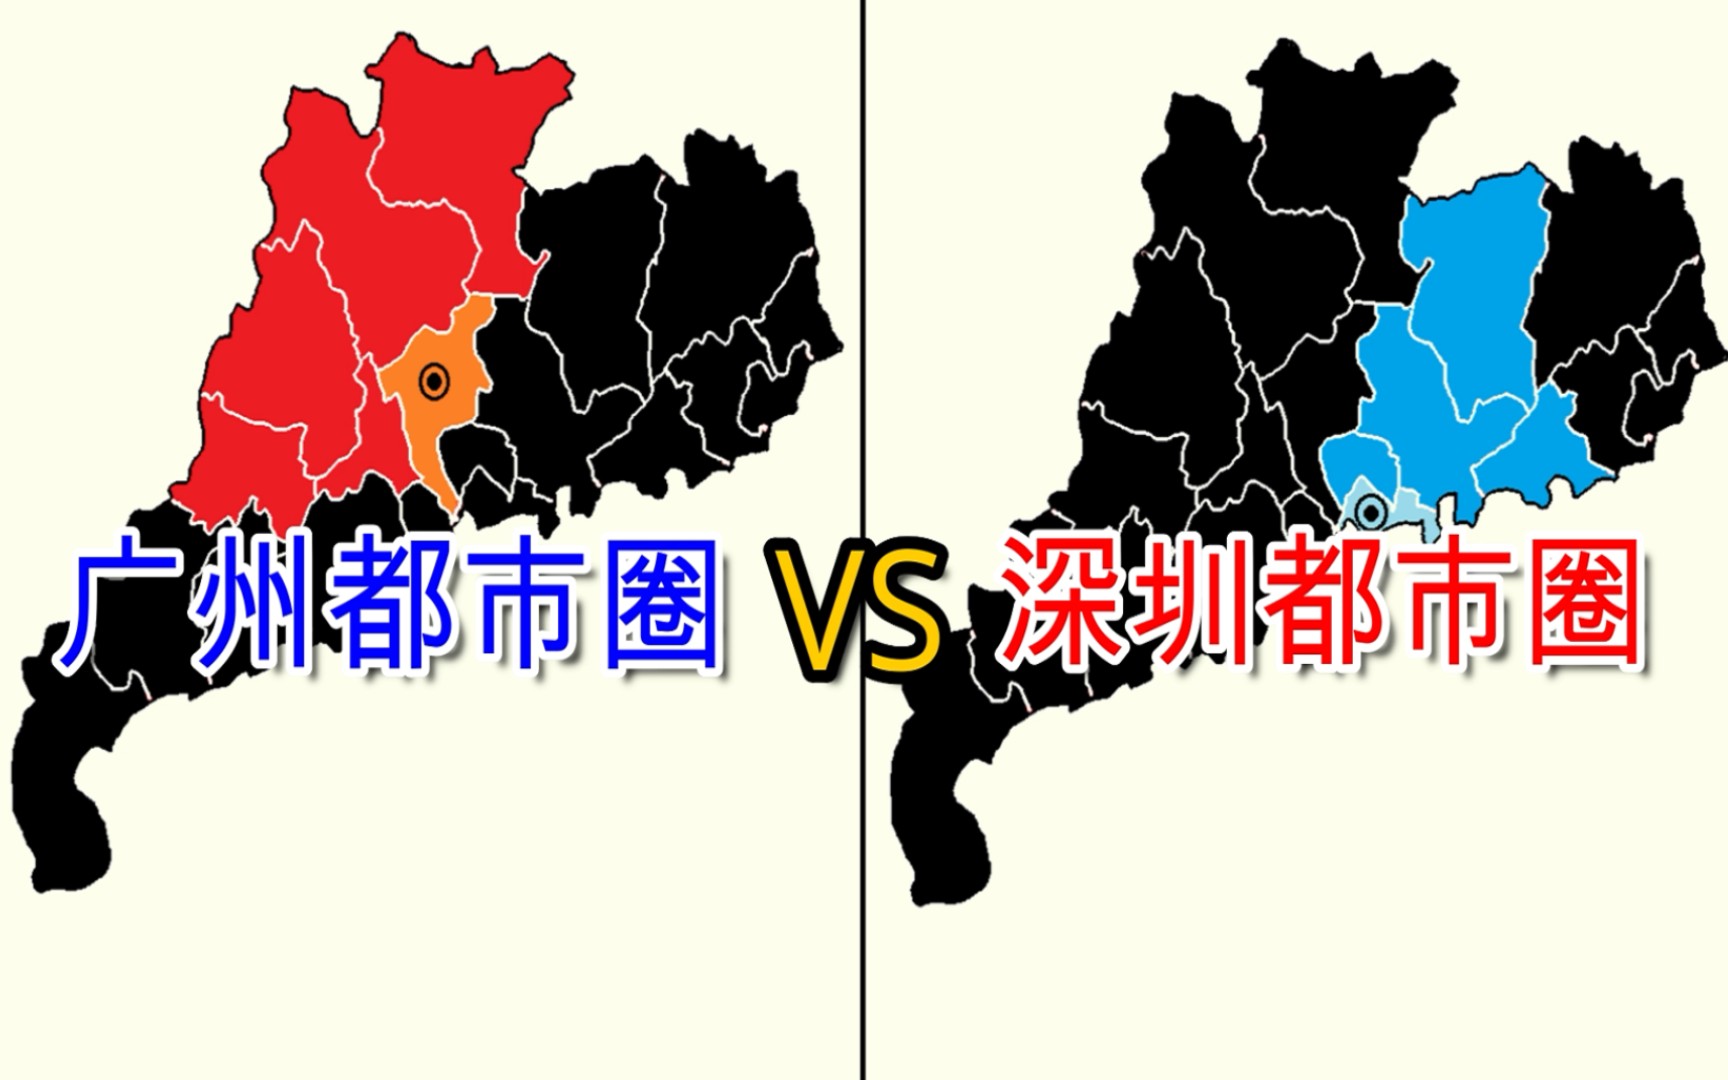 广州都市圈vs深圳都市圈 各市经济实力对比【数据可视化】